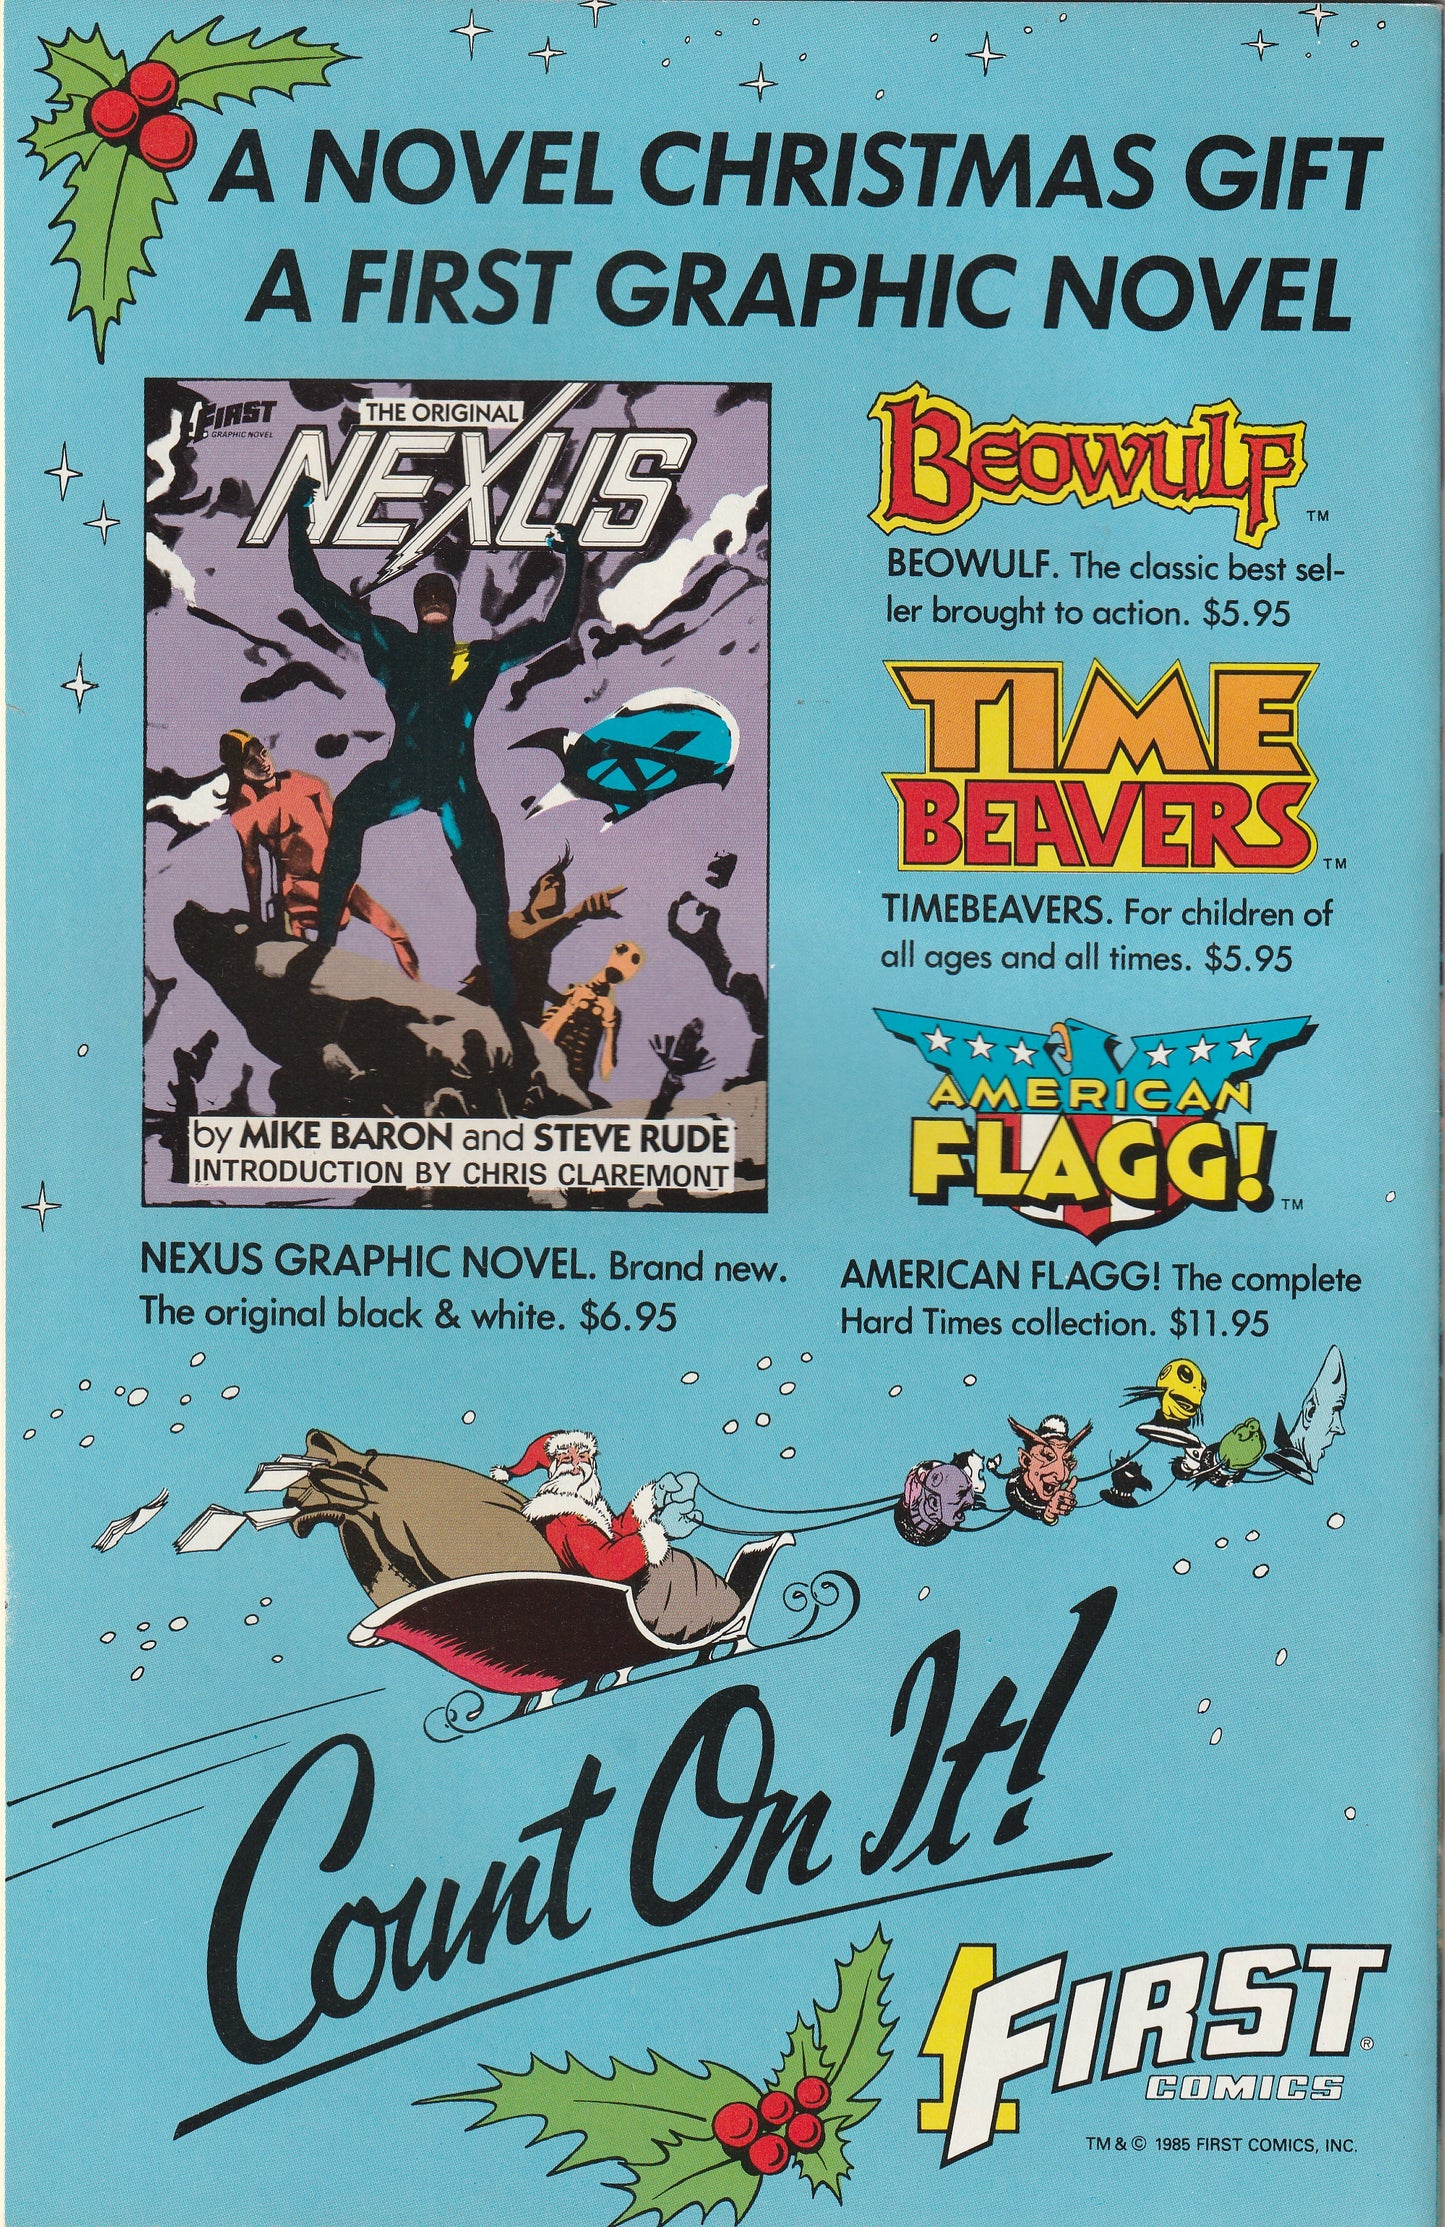 NEXUS #19 (Vol 2, 1986)